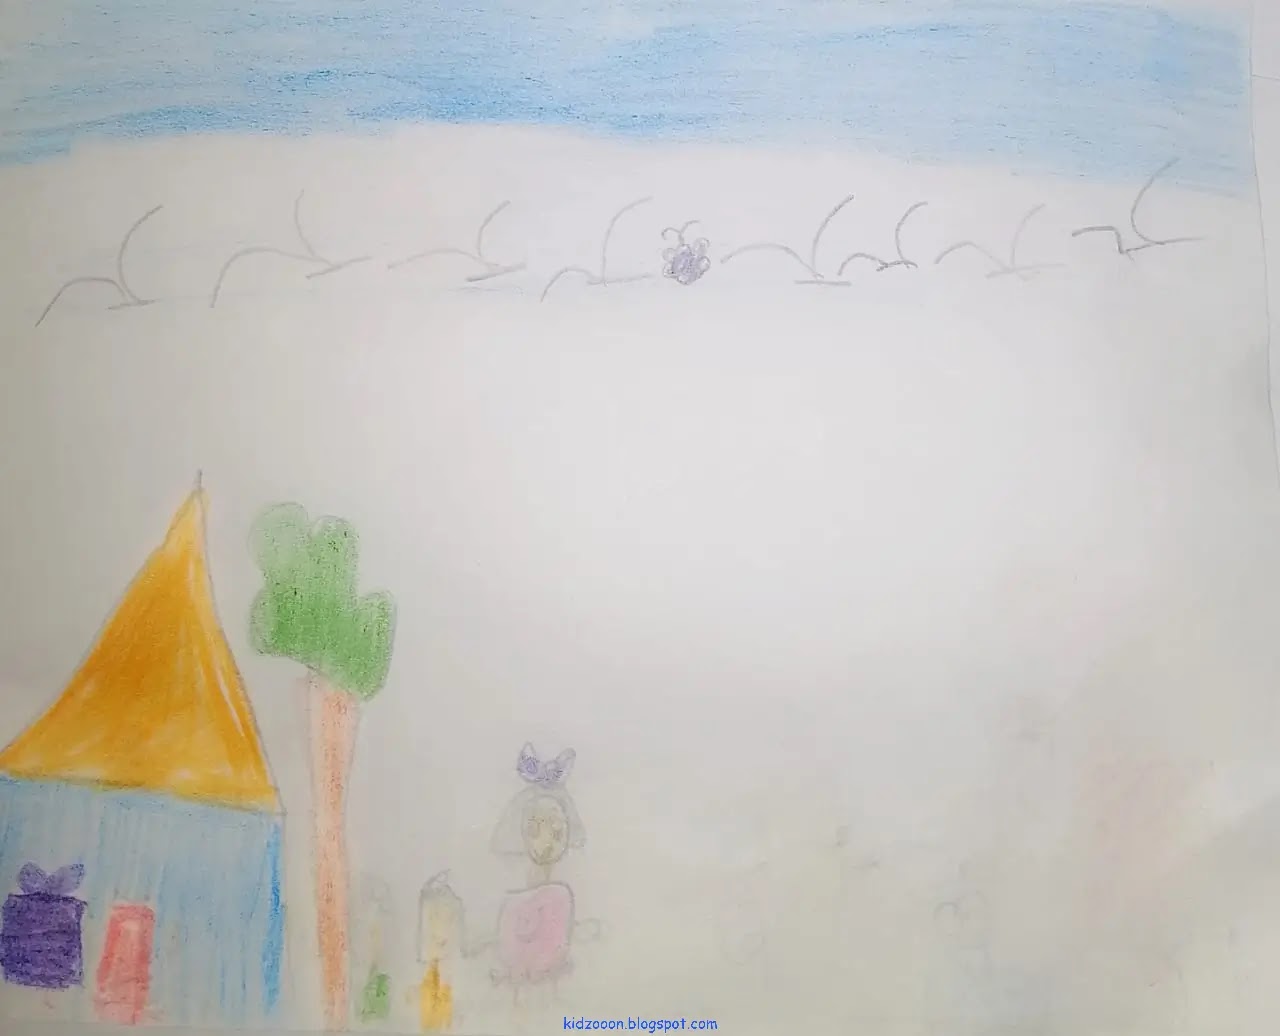 من قصص الأطفال - قصة: صندوق العيد - تأليف: زهراء كوثراني - فكرة ورسومات الطفلة: ملك مصطفى - موقع (كيدزوون | Kidzooon)